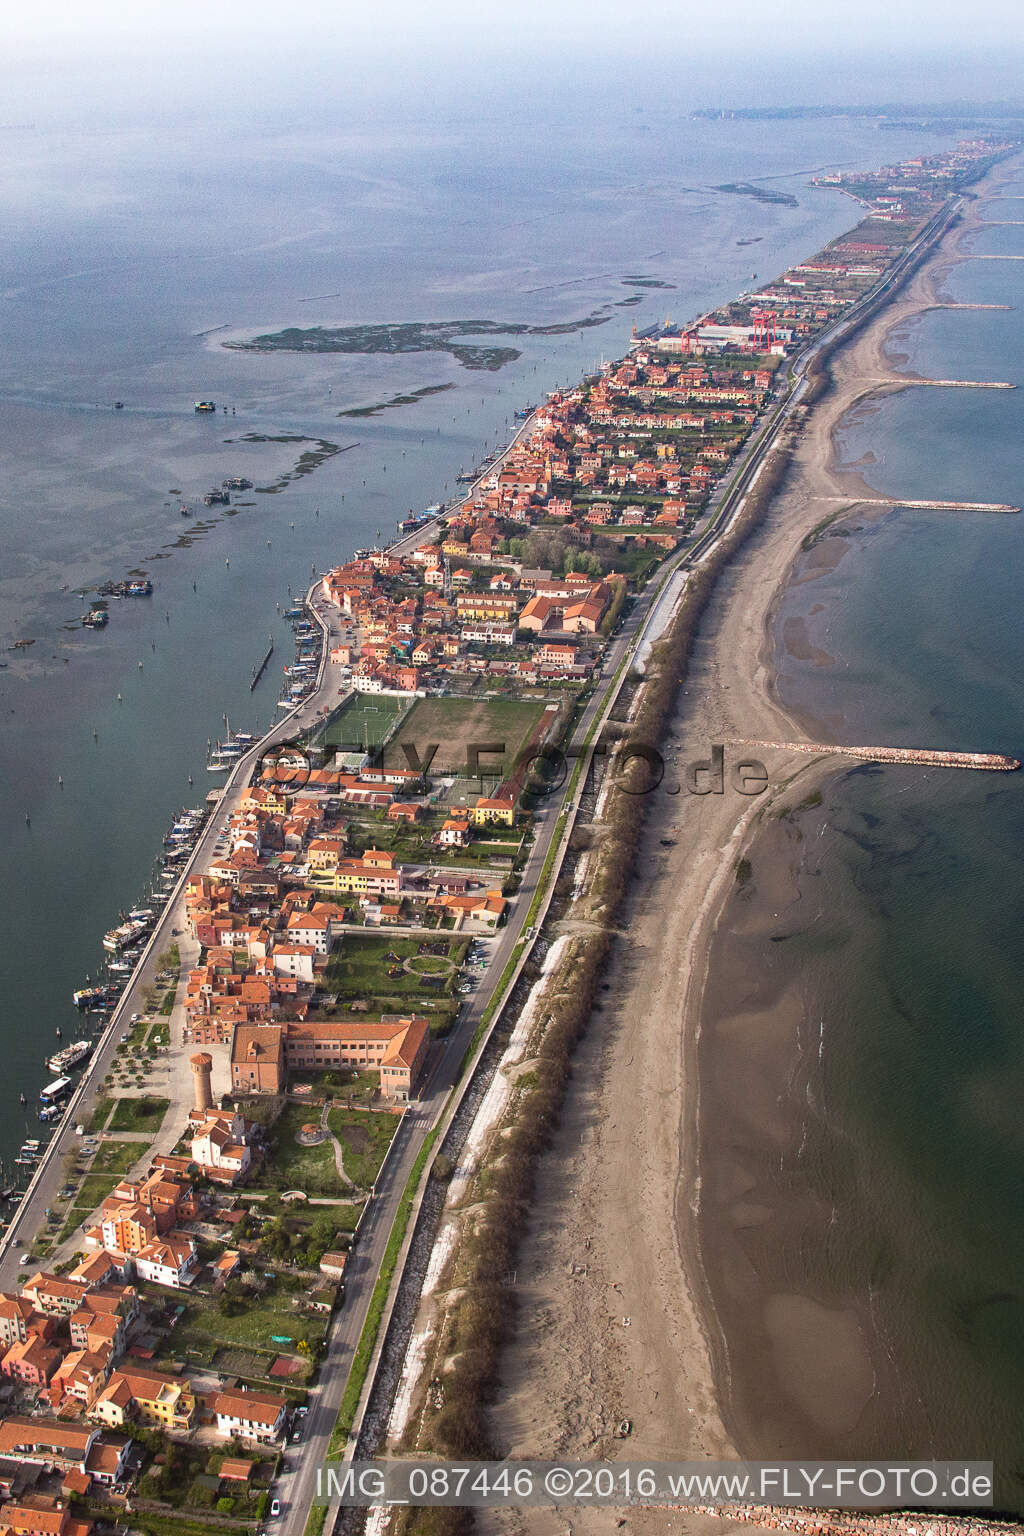 Siedlungsgebiet im Ortsteil Pellestrina in Venedig in Venetien, Italien von der Drohne aus gesehen